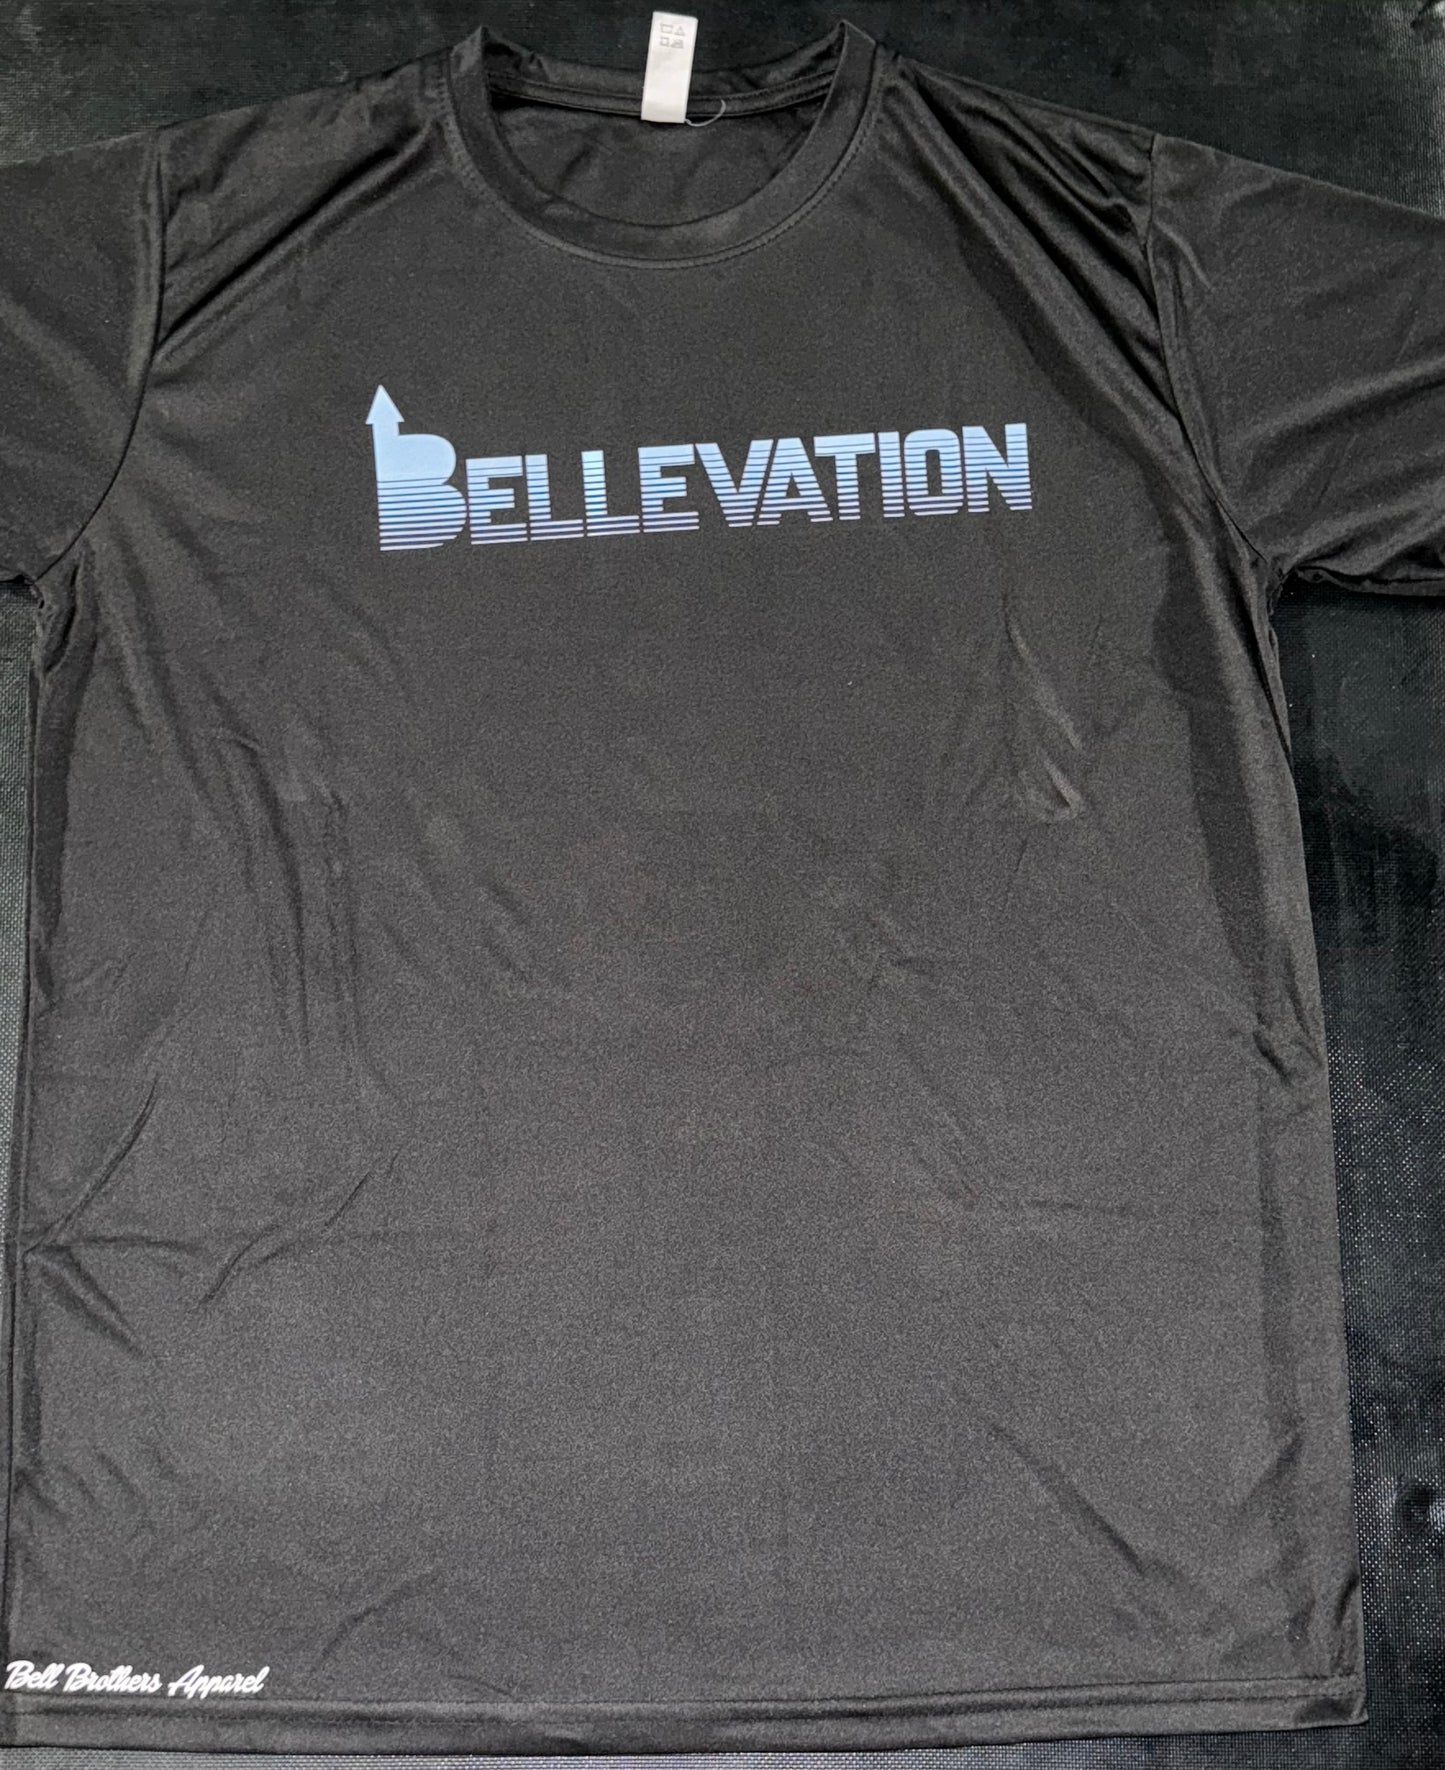 Bellevation "Elevated" Tee